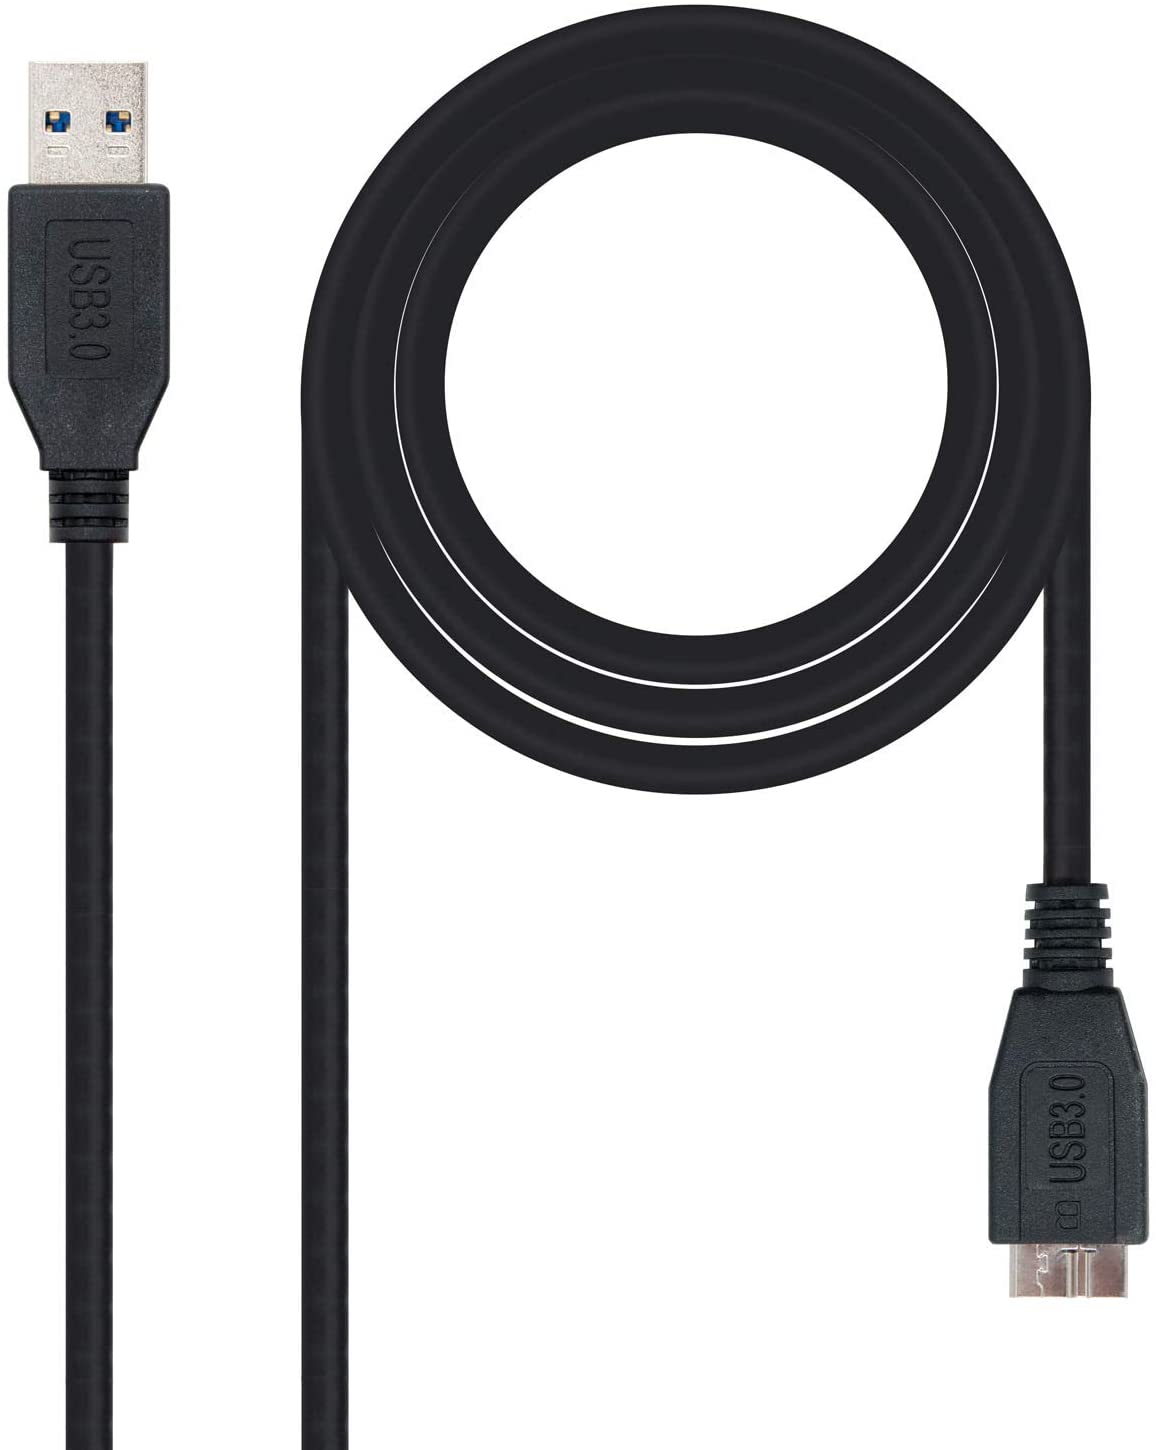 Cable Alargo Usb 3.0 Activo 10m Equip